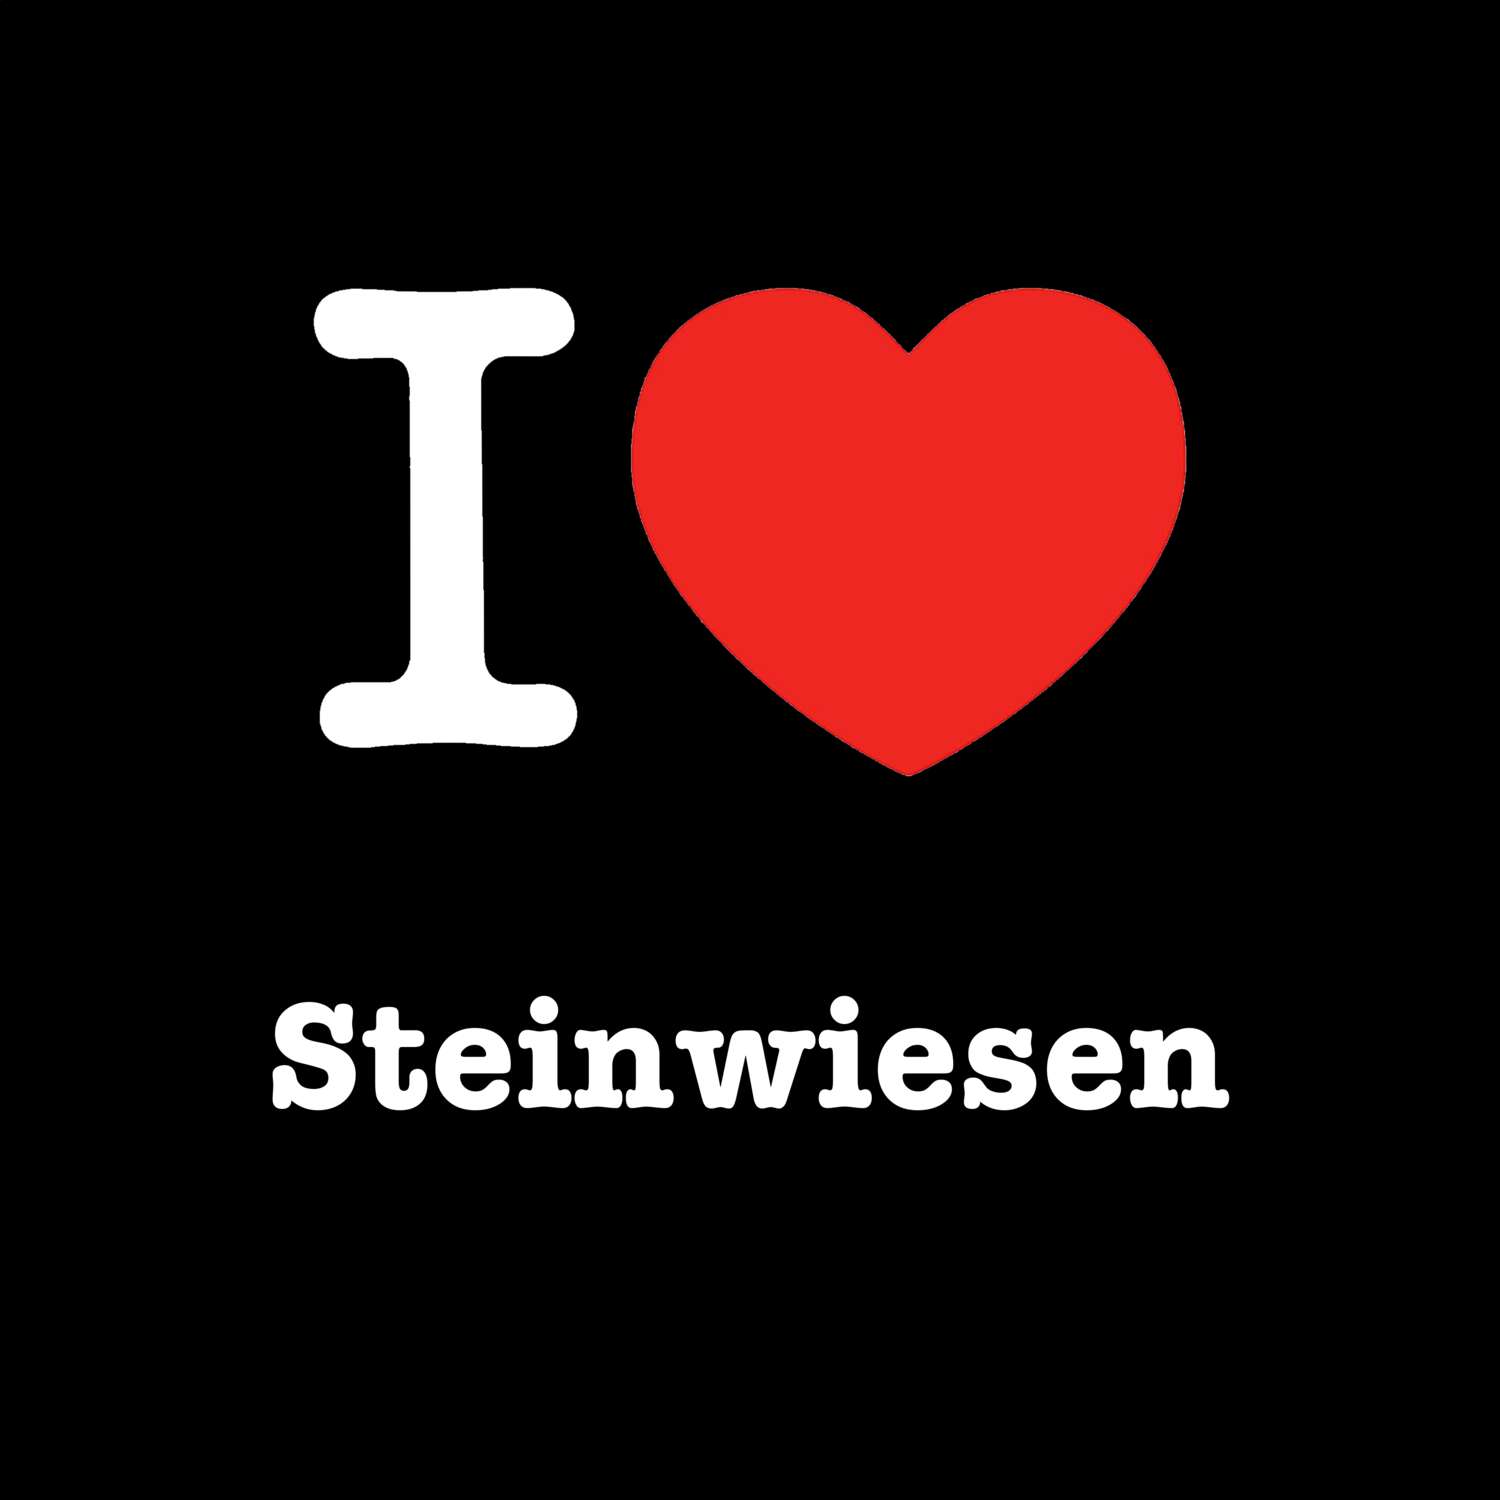 Steinwiesen T-Shirt »I love«